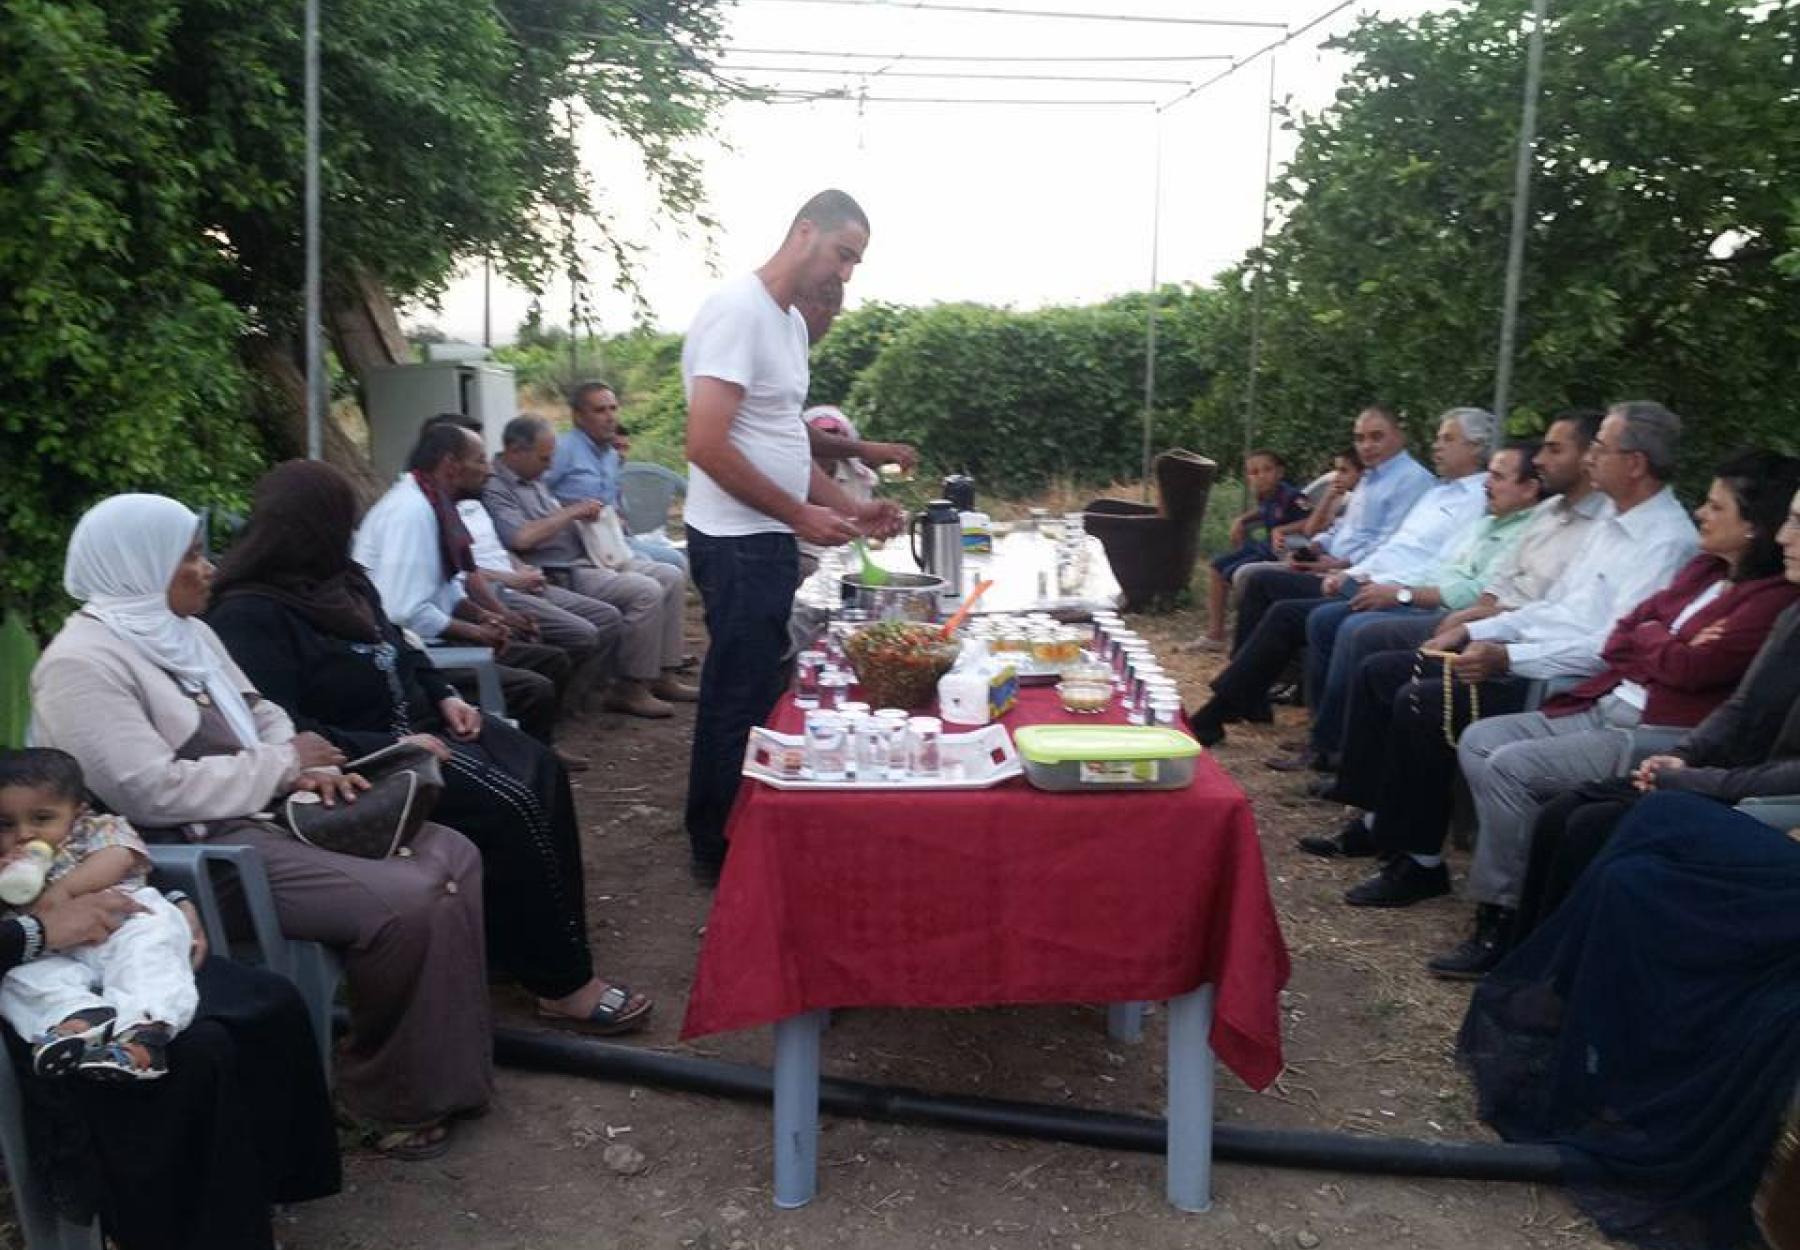 فريق العربية لحماية الطبيعة يلبي دعوة نقابة العاملات والعمال الزراعيين في وادي الريان لطعام الإفطار